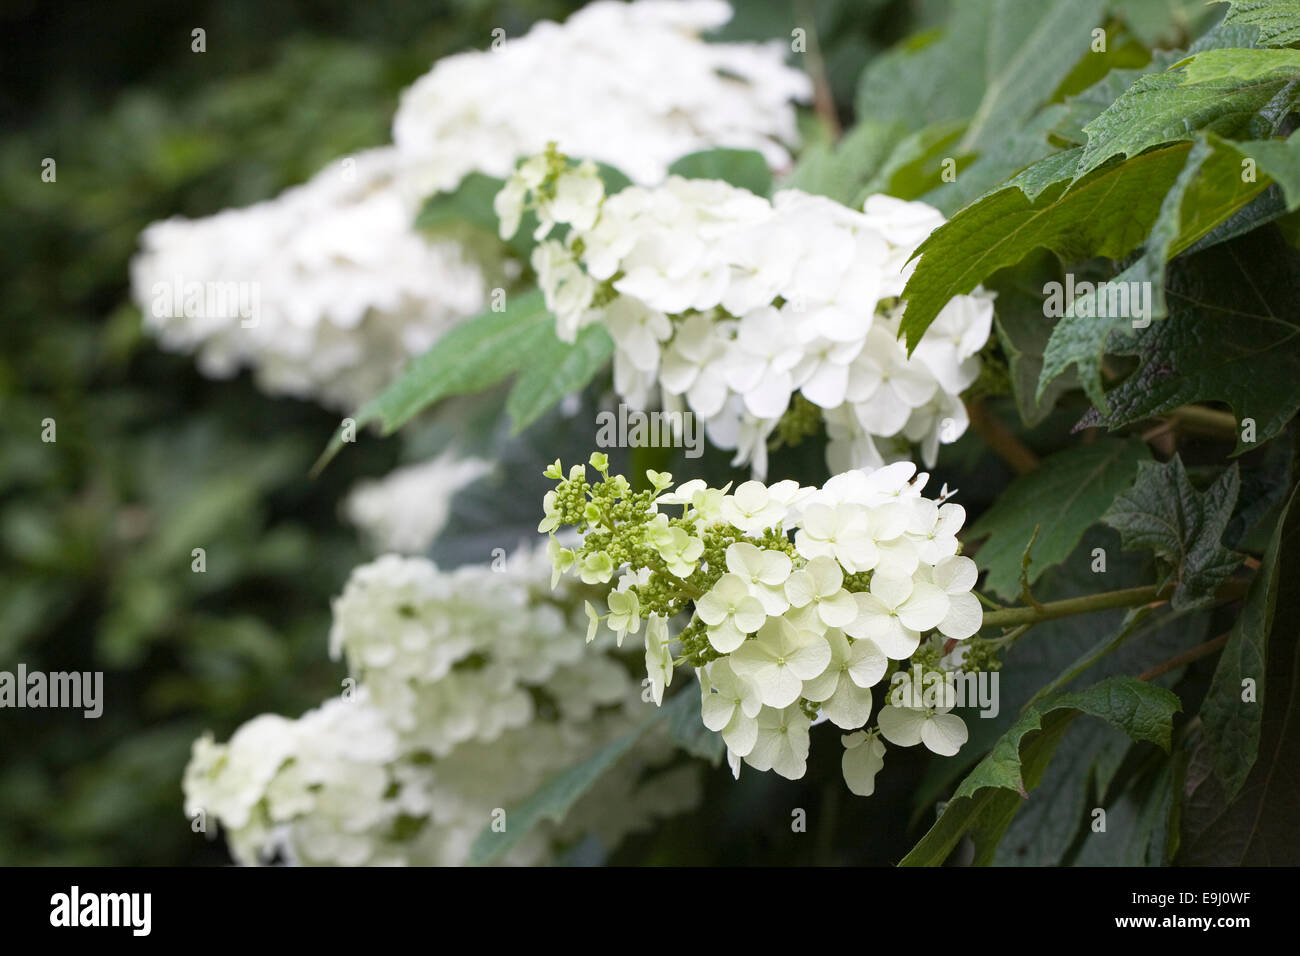 Hydrangea quercifolia 'Snow Queen' flowers. Stock Photo